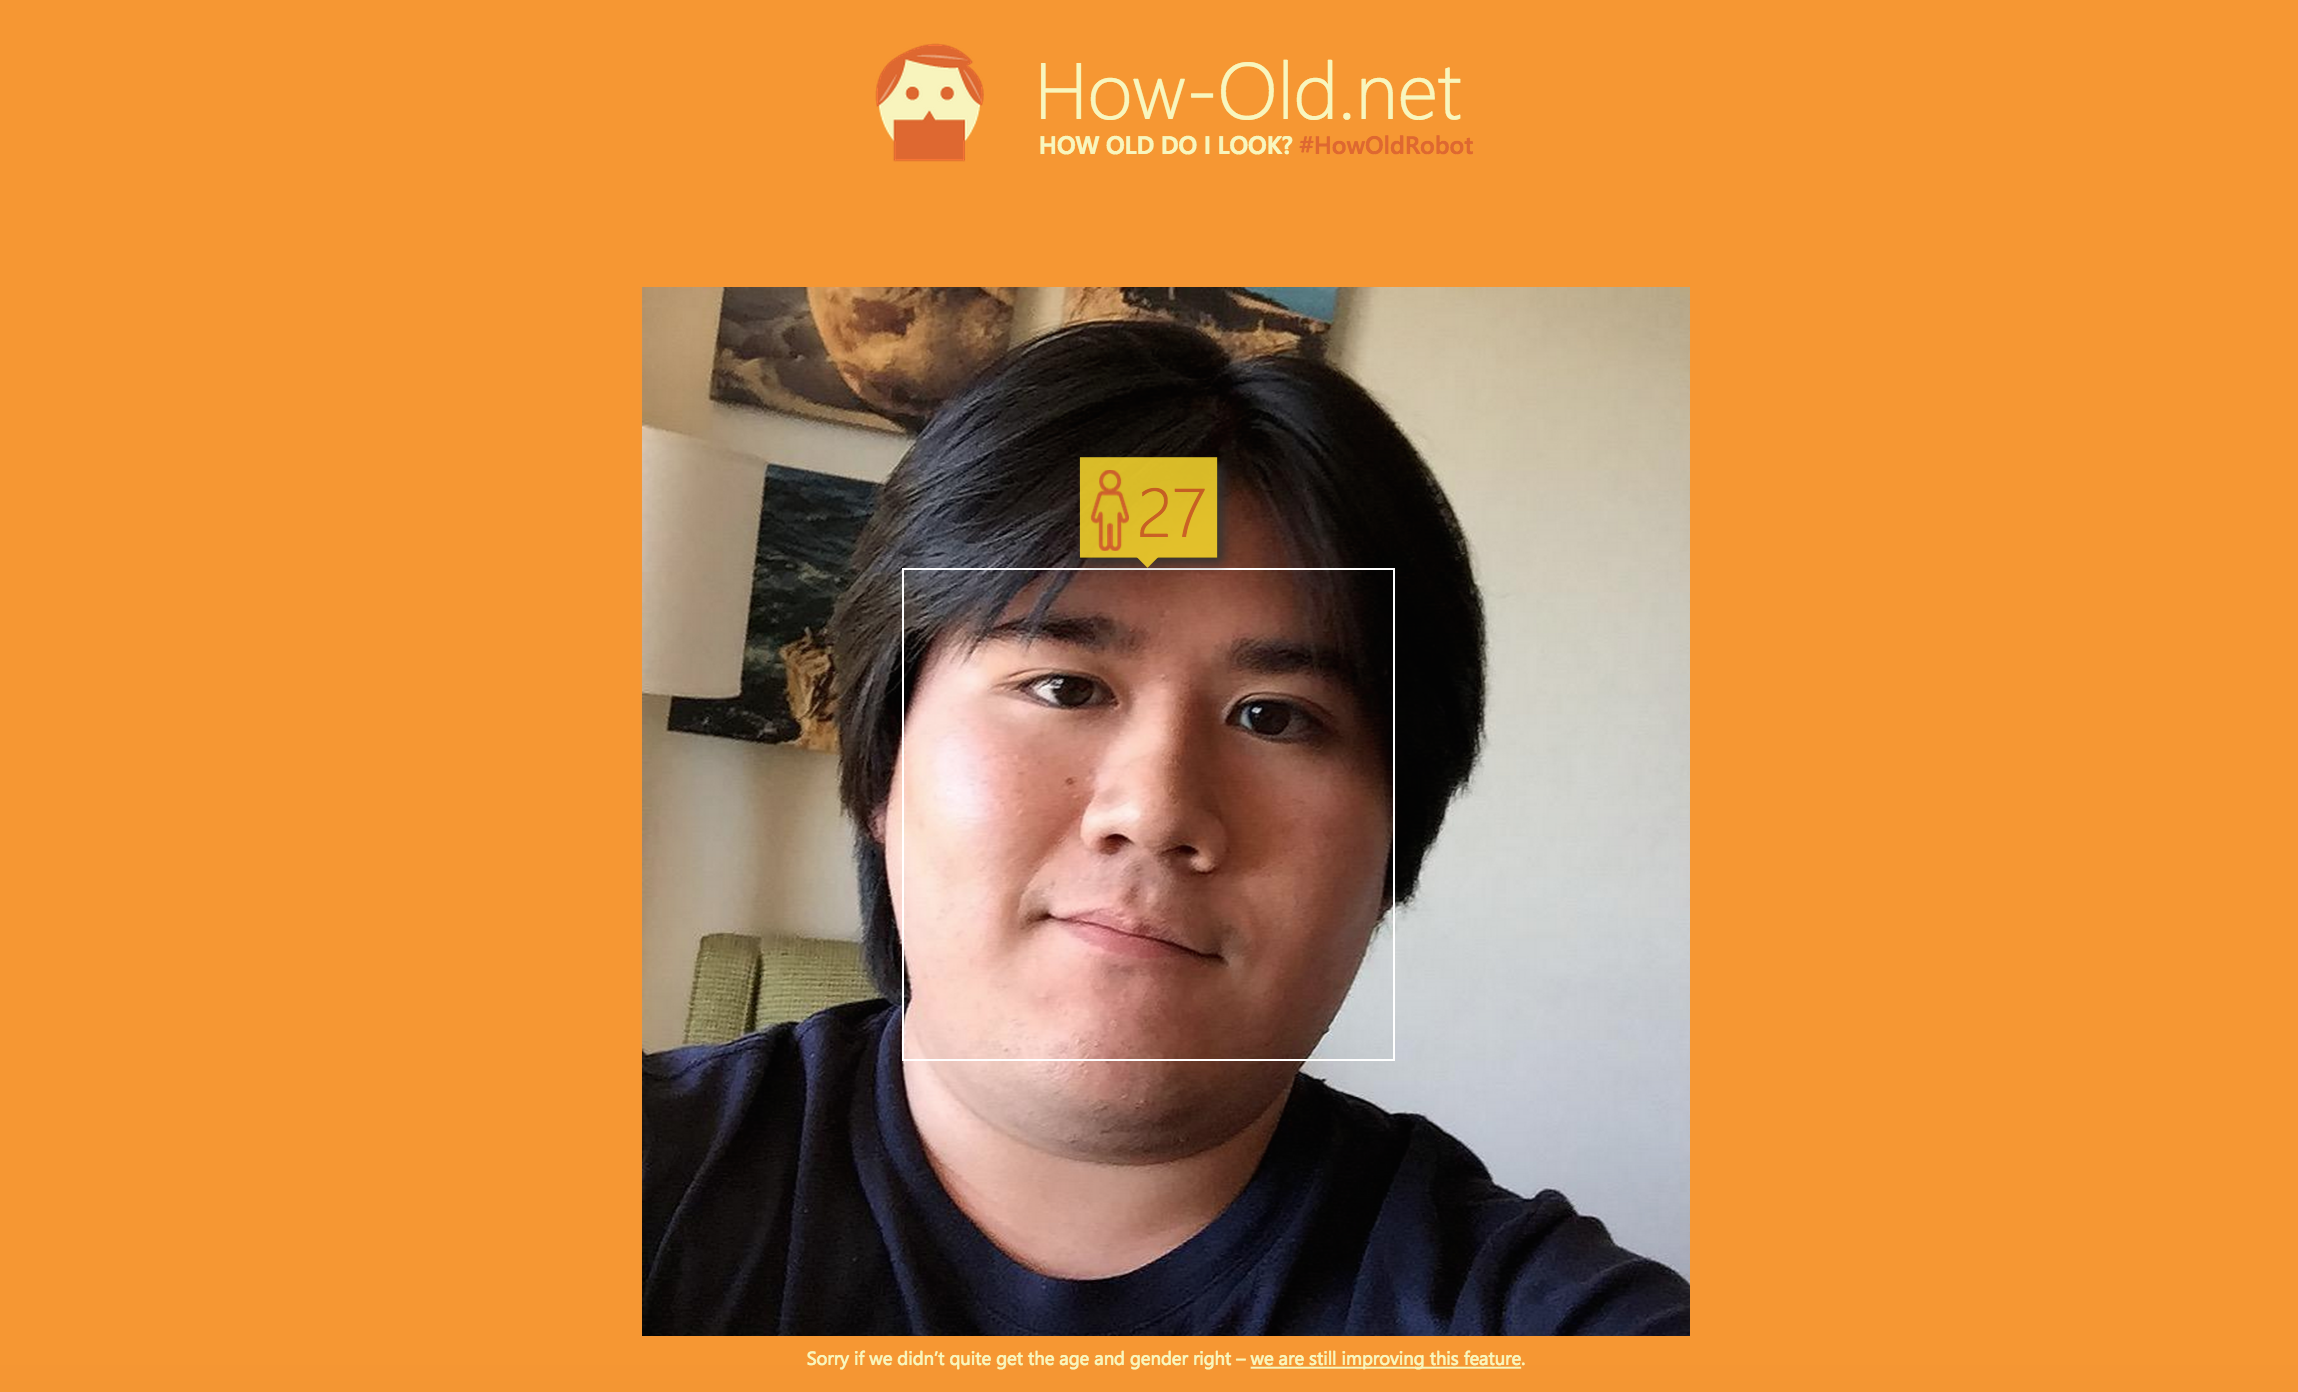 Quantos anos você tem? Este site da Microsoft tenta adivinhar a sua idade pela foto